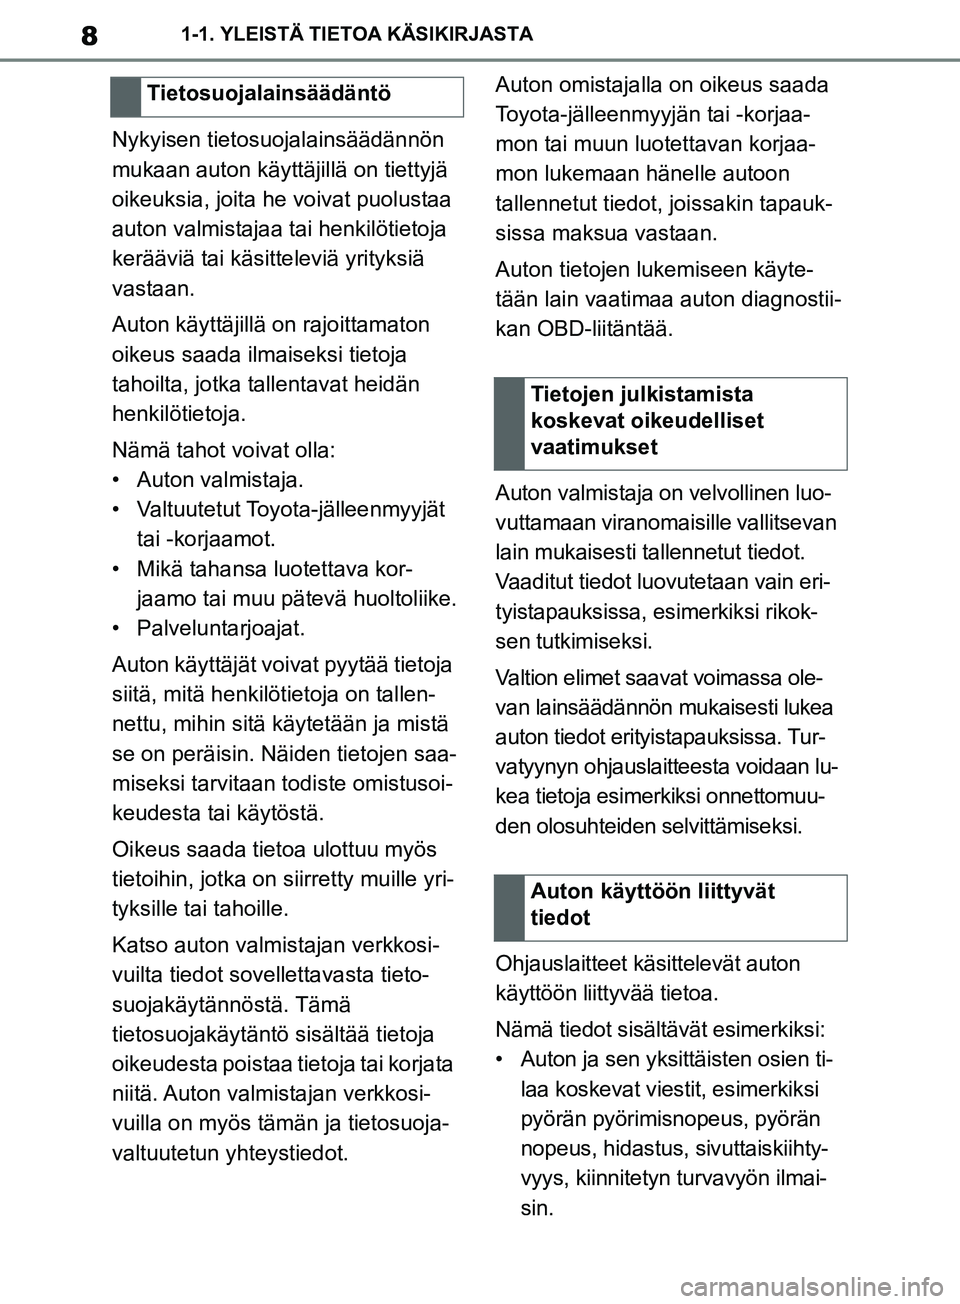 TOYOTA SUPRA 2019  Omistajan Käsikirja (in Finnish) 8
Supran omistajan käsikirja1-1. YLEISTÄ TIETOA KÄSIKIRJASTA
Nykyisen tietosuojalainsäädännön 
mukaan auton käyttäjillä on tiettyjä 
oikeuksia, joita he voivat puolustaa 
auton valmistajaa 